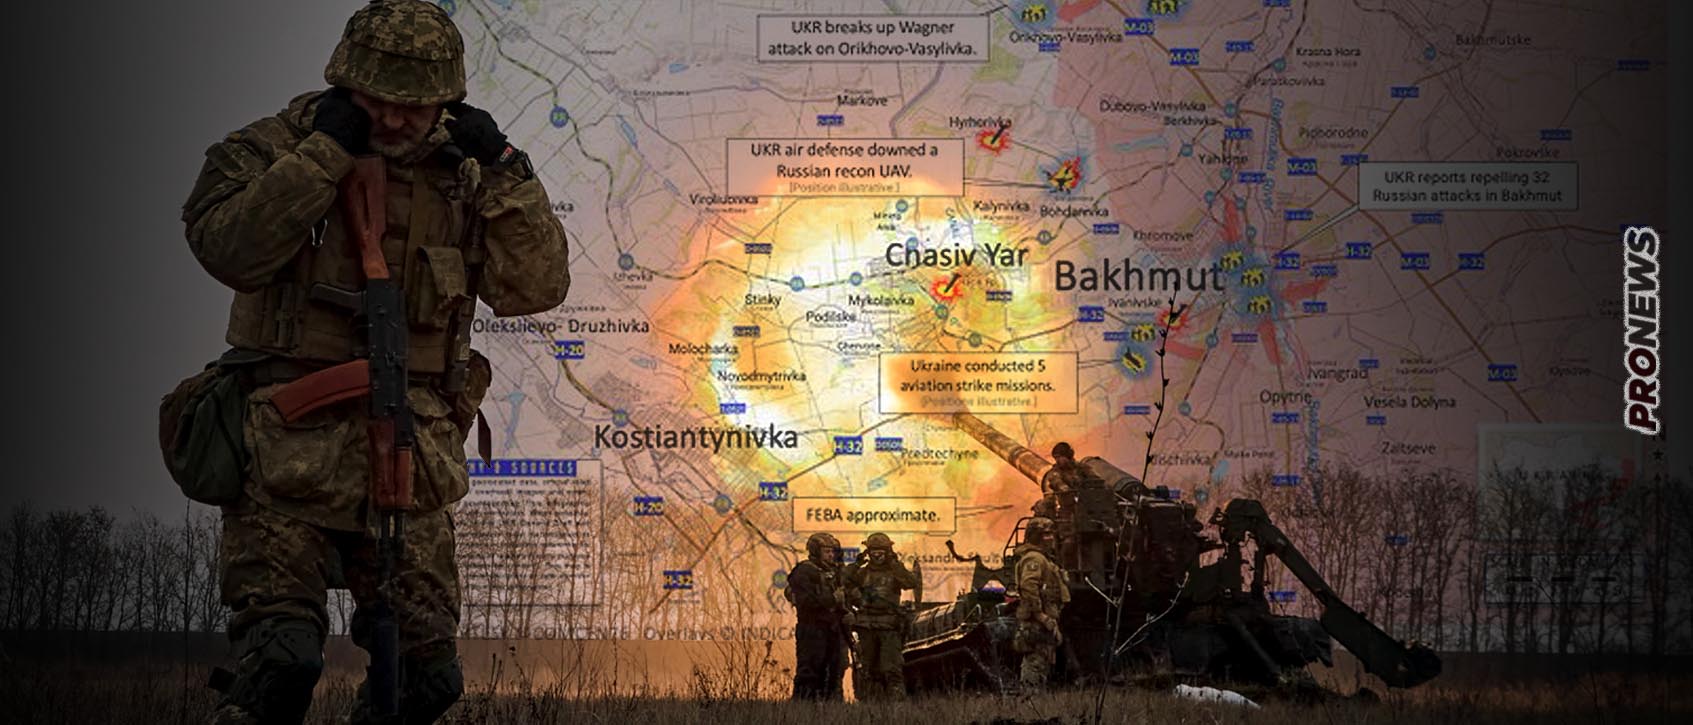 Οι Ρώσοι μετά το Μπάχκμουτ προωθούνται στο Τσάσιβ Γιαρ και ετοιμάζονται για την μεγάλη ουκρανική αντεπίθεση